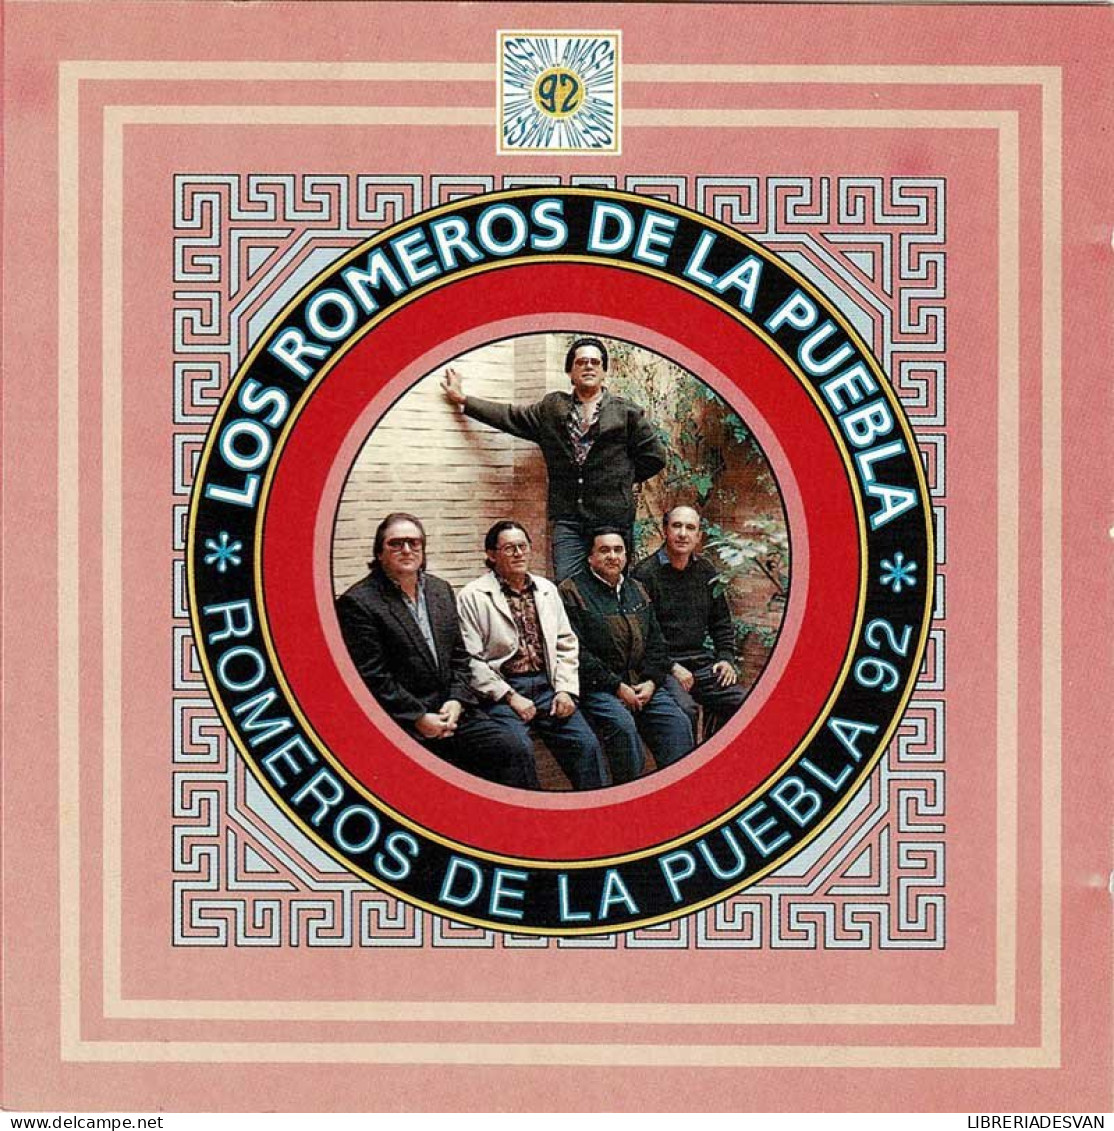 Los Romeros De La Puebla - Romeros De La Puebla 92. CD - Other - Spanish Music